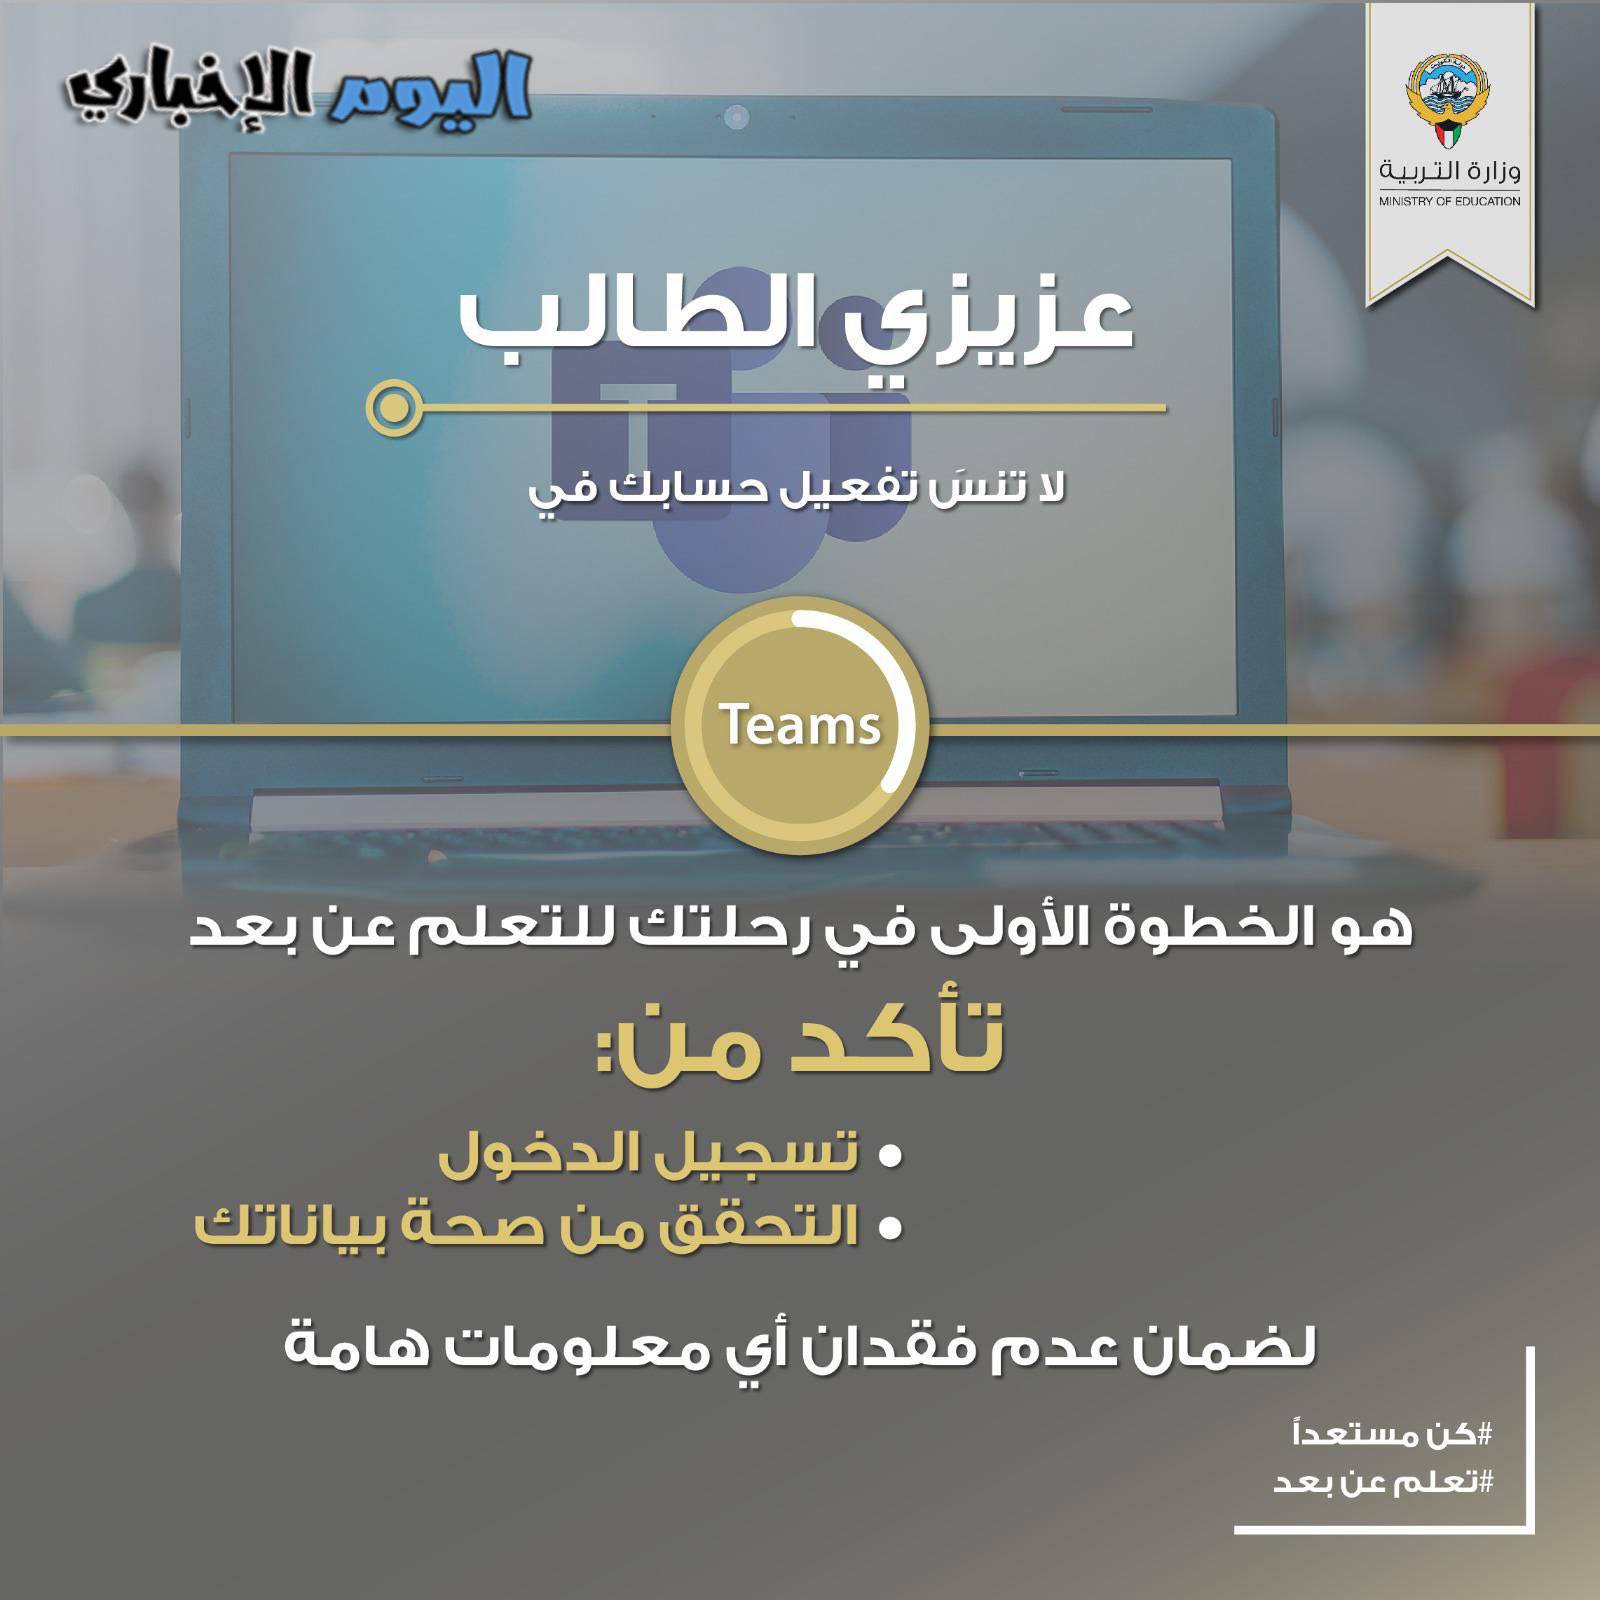 بوابة الكويت التعليمية تسجيل دخول تيمز